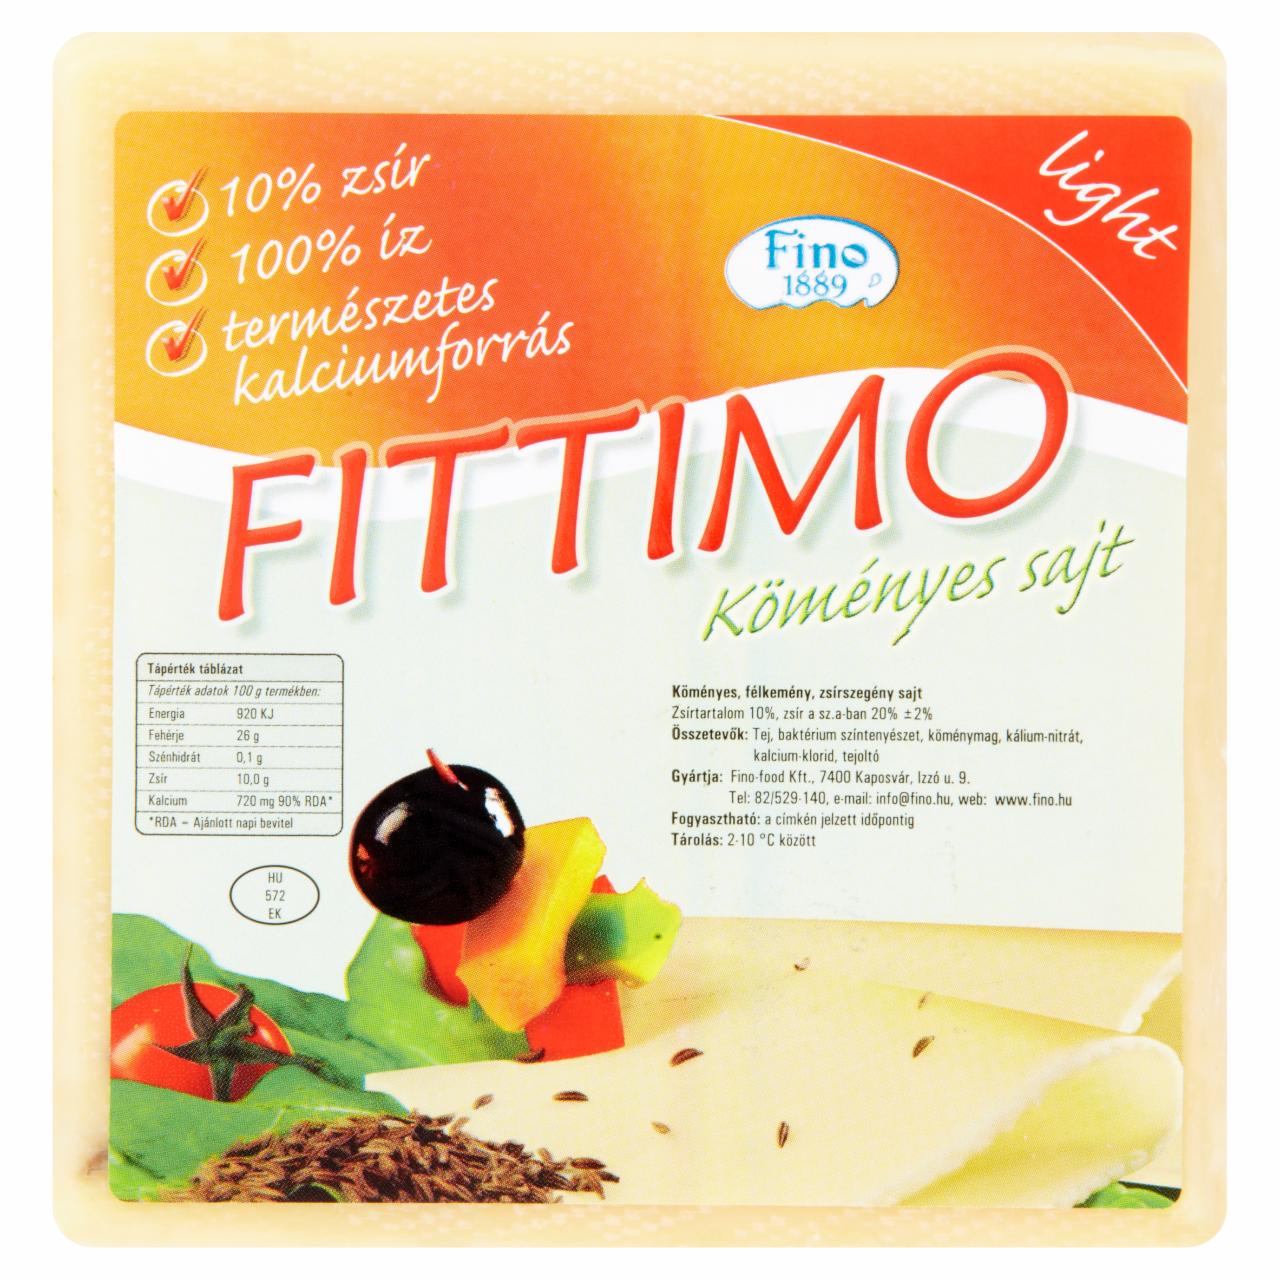 Képek - Fino Fittimo köményes sajt